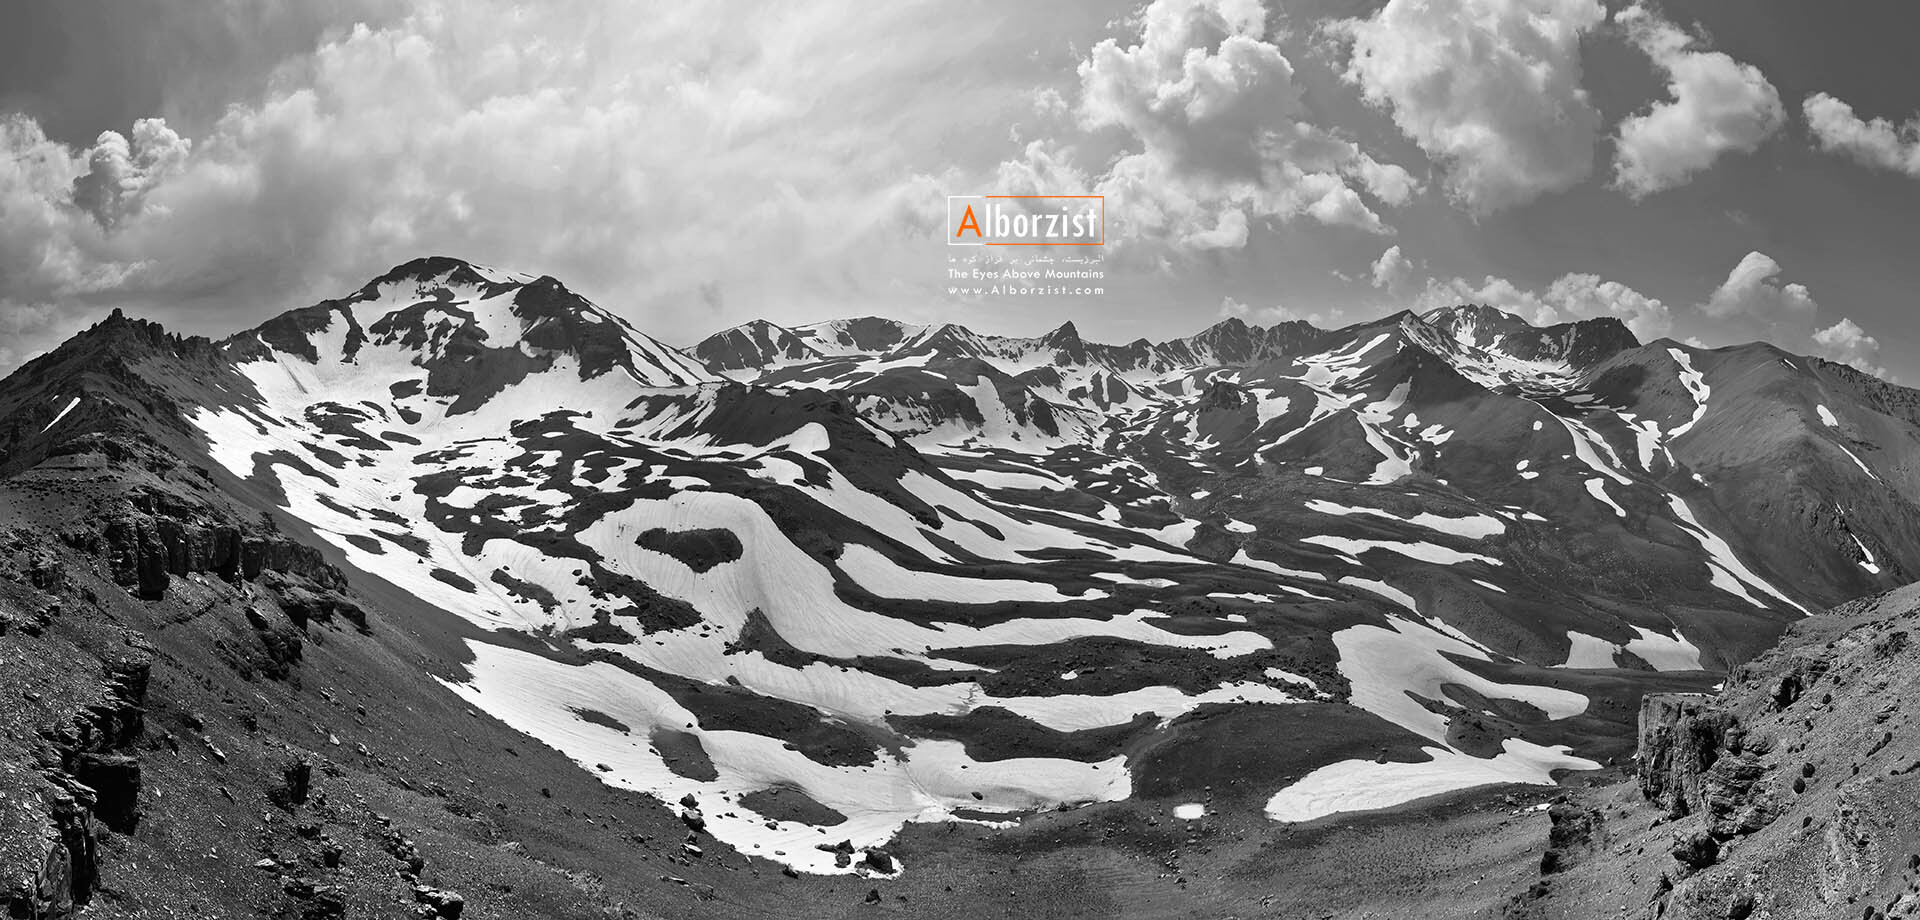  یخچال های دشت کوهستانی هسارچال در جنوب قله علمکوه 